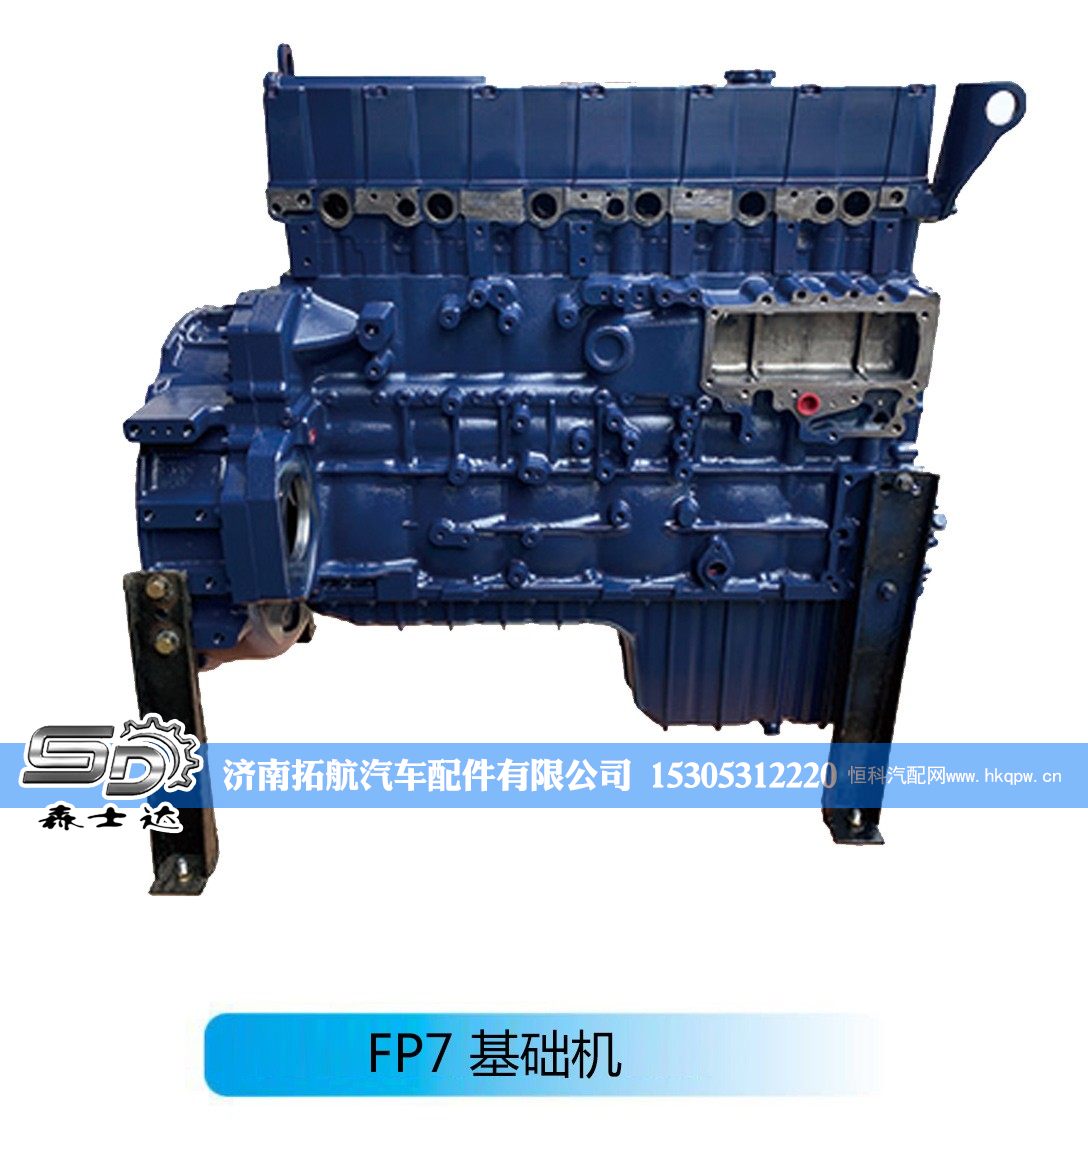 ,潍柴系列柴油发动机--FP7 基础机,济南拓航汽车配件有限公司